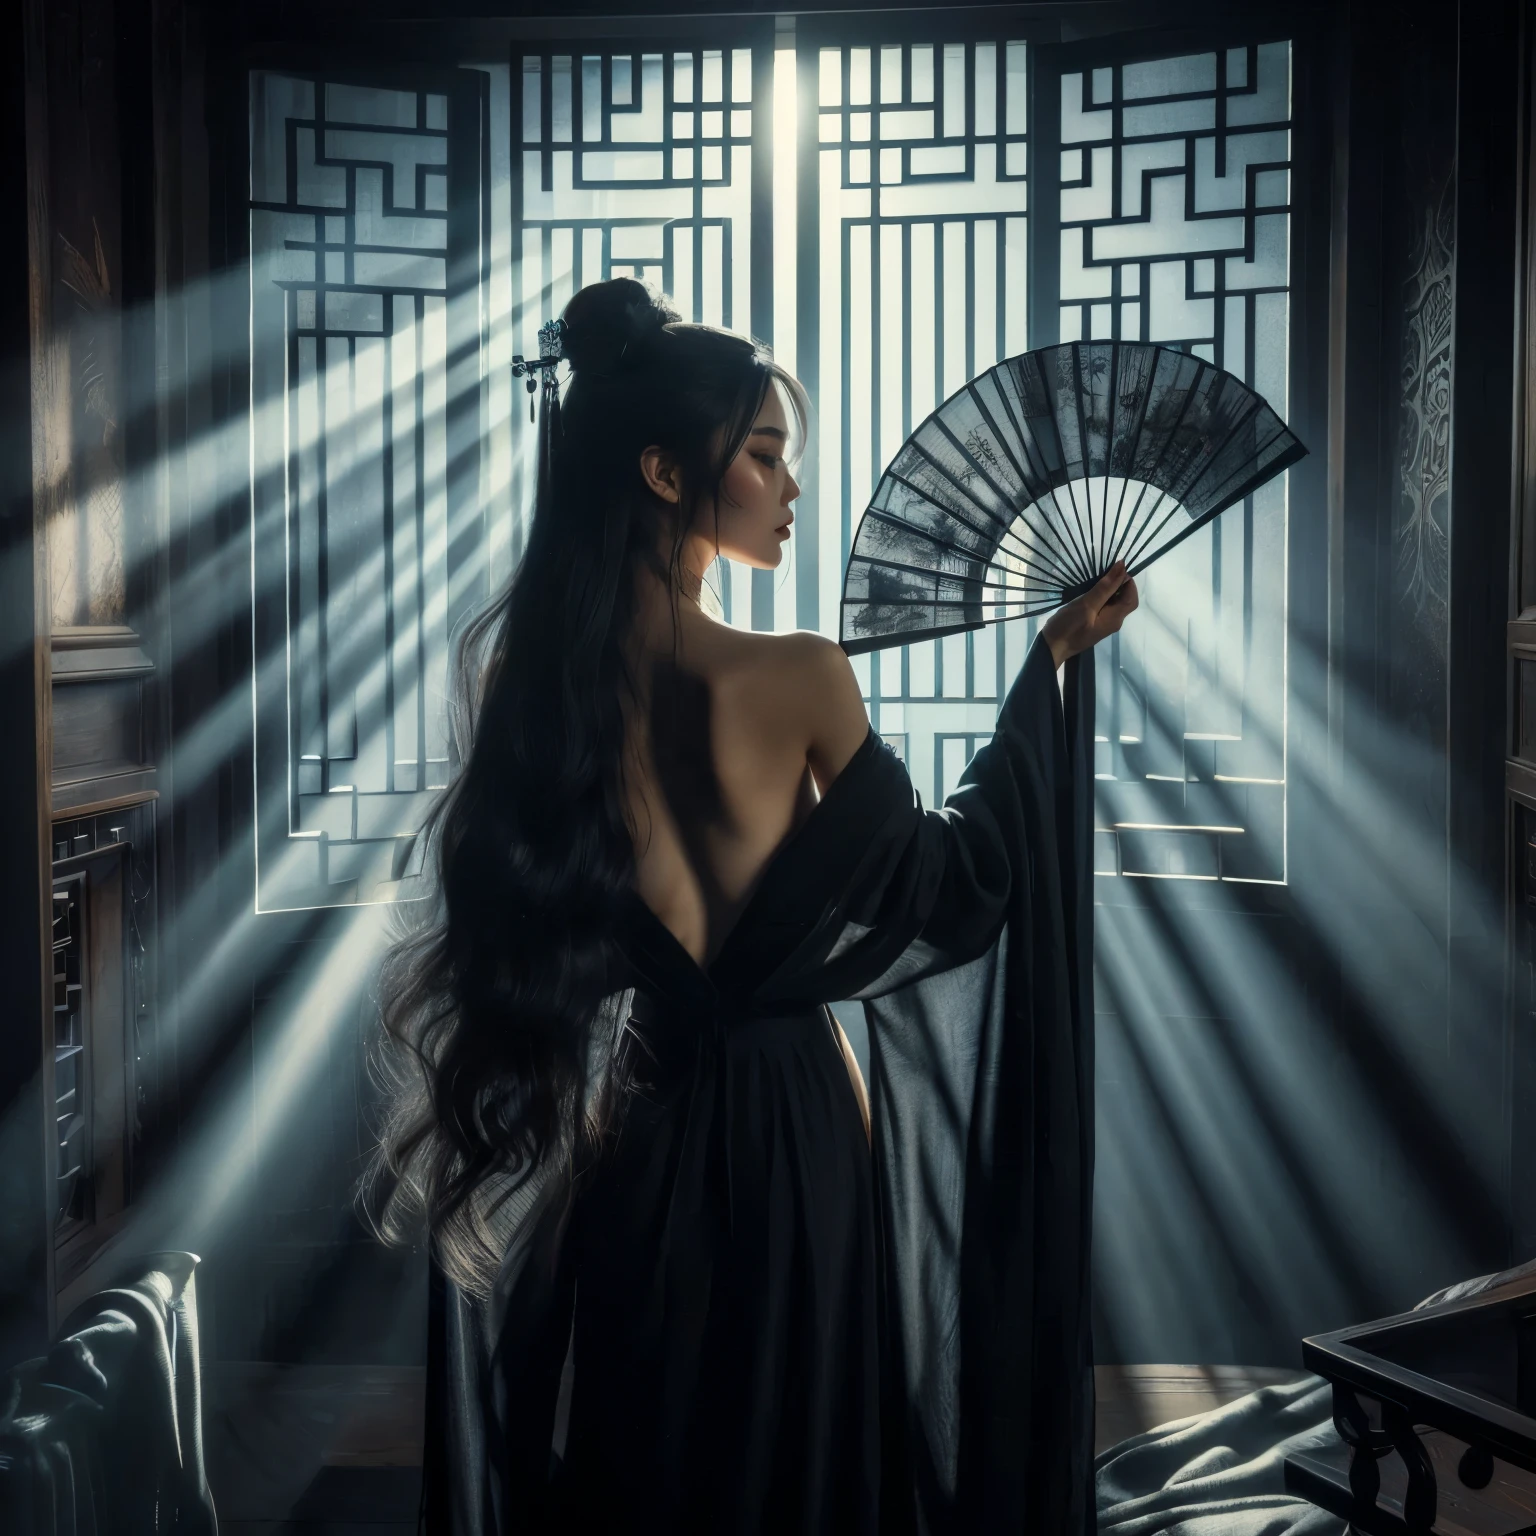 Uma mulher asiática ultra bonita, cabelo preto comprido, segurando um longo leque de luta asiático com licor antigo e preto, vestindo um longo roupão chinês preto, em uma sala escura, raios de luar entram pela janela aberta da varanda, Tinta preta, no estilo de Caravaggio e Da Vinci, Resolução 8K, hiperdetalhado, fotorrealista, um estilo de arte de pintura a óleo, Sfumato,